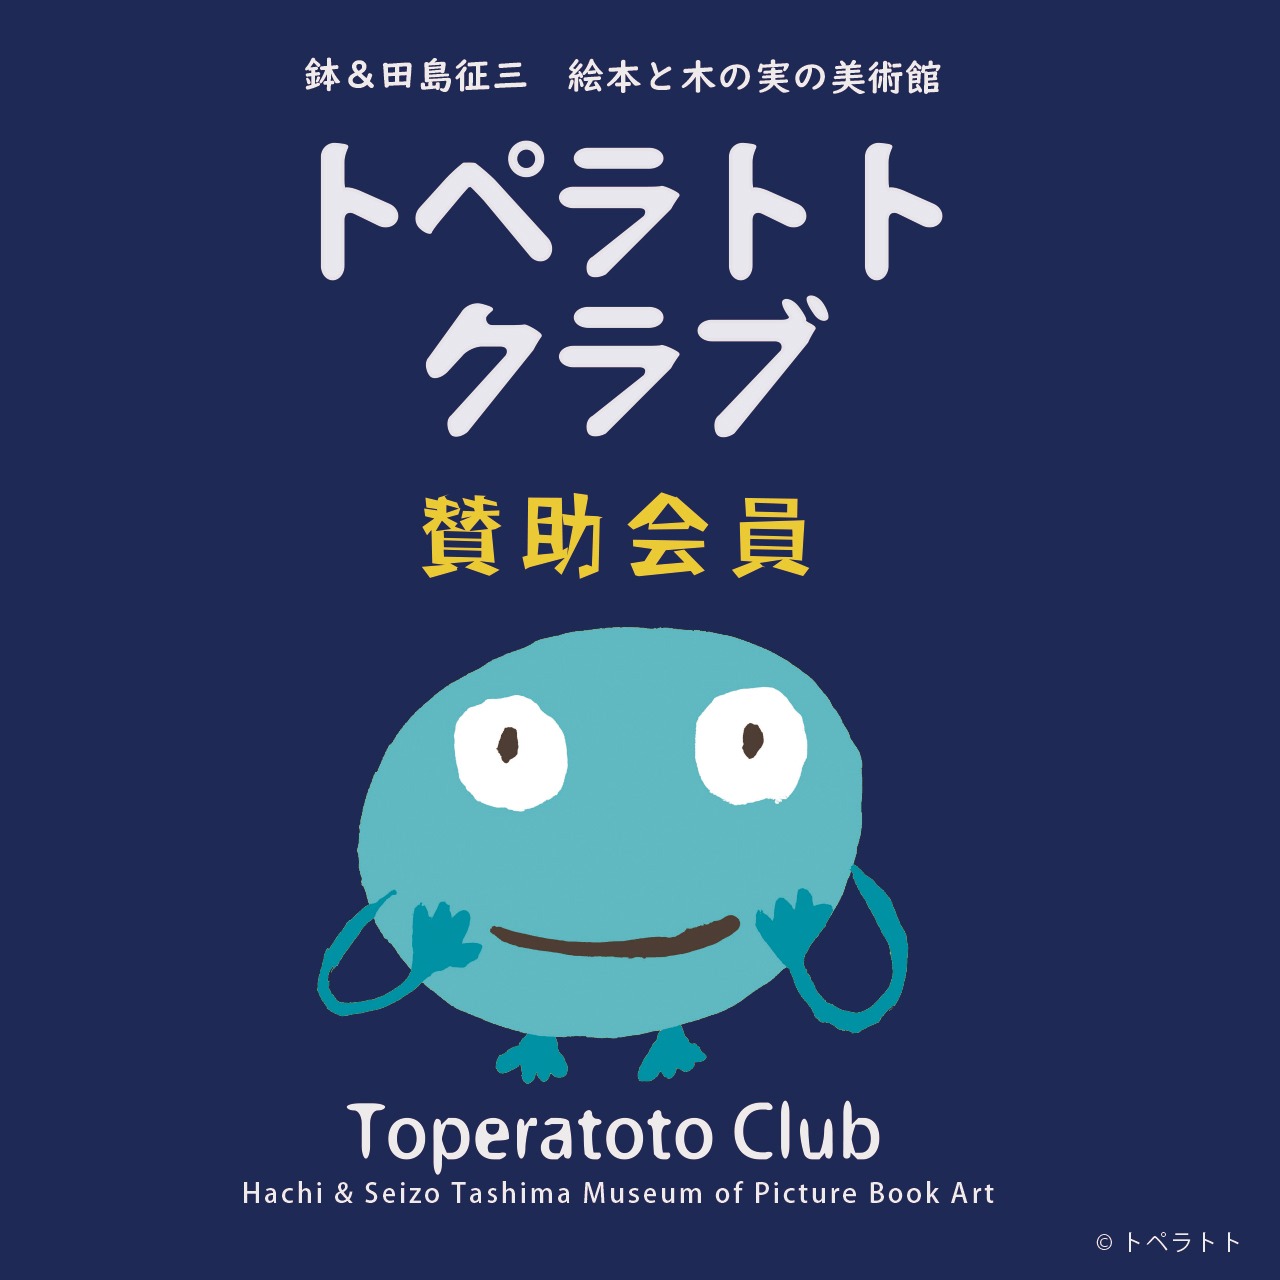 トペラトトクラブ【賛助会員】/ Toperatoto Club (Support Member)